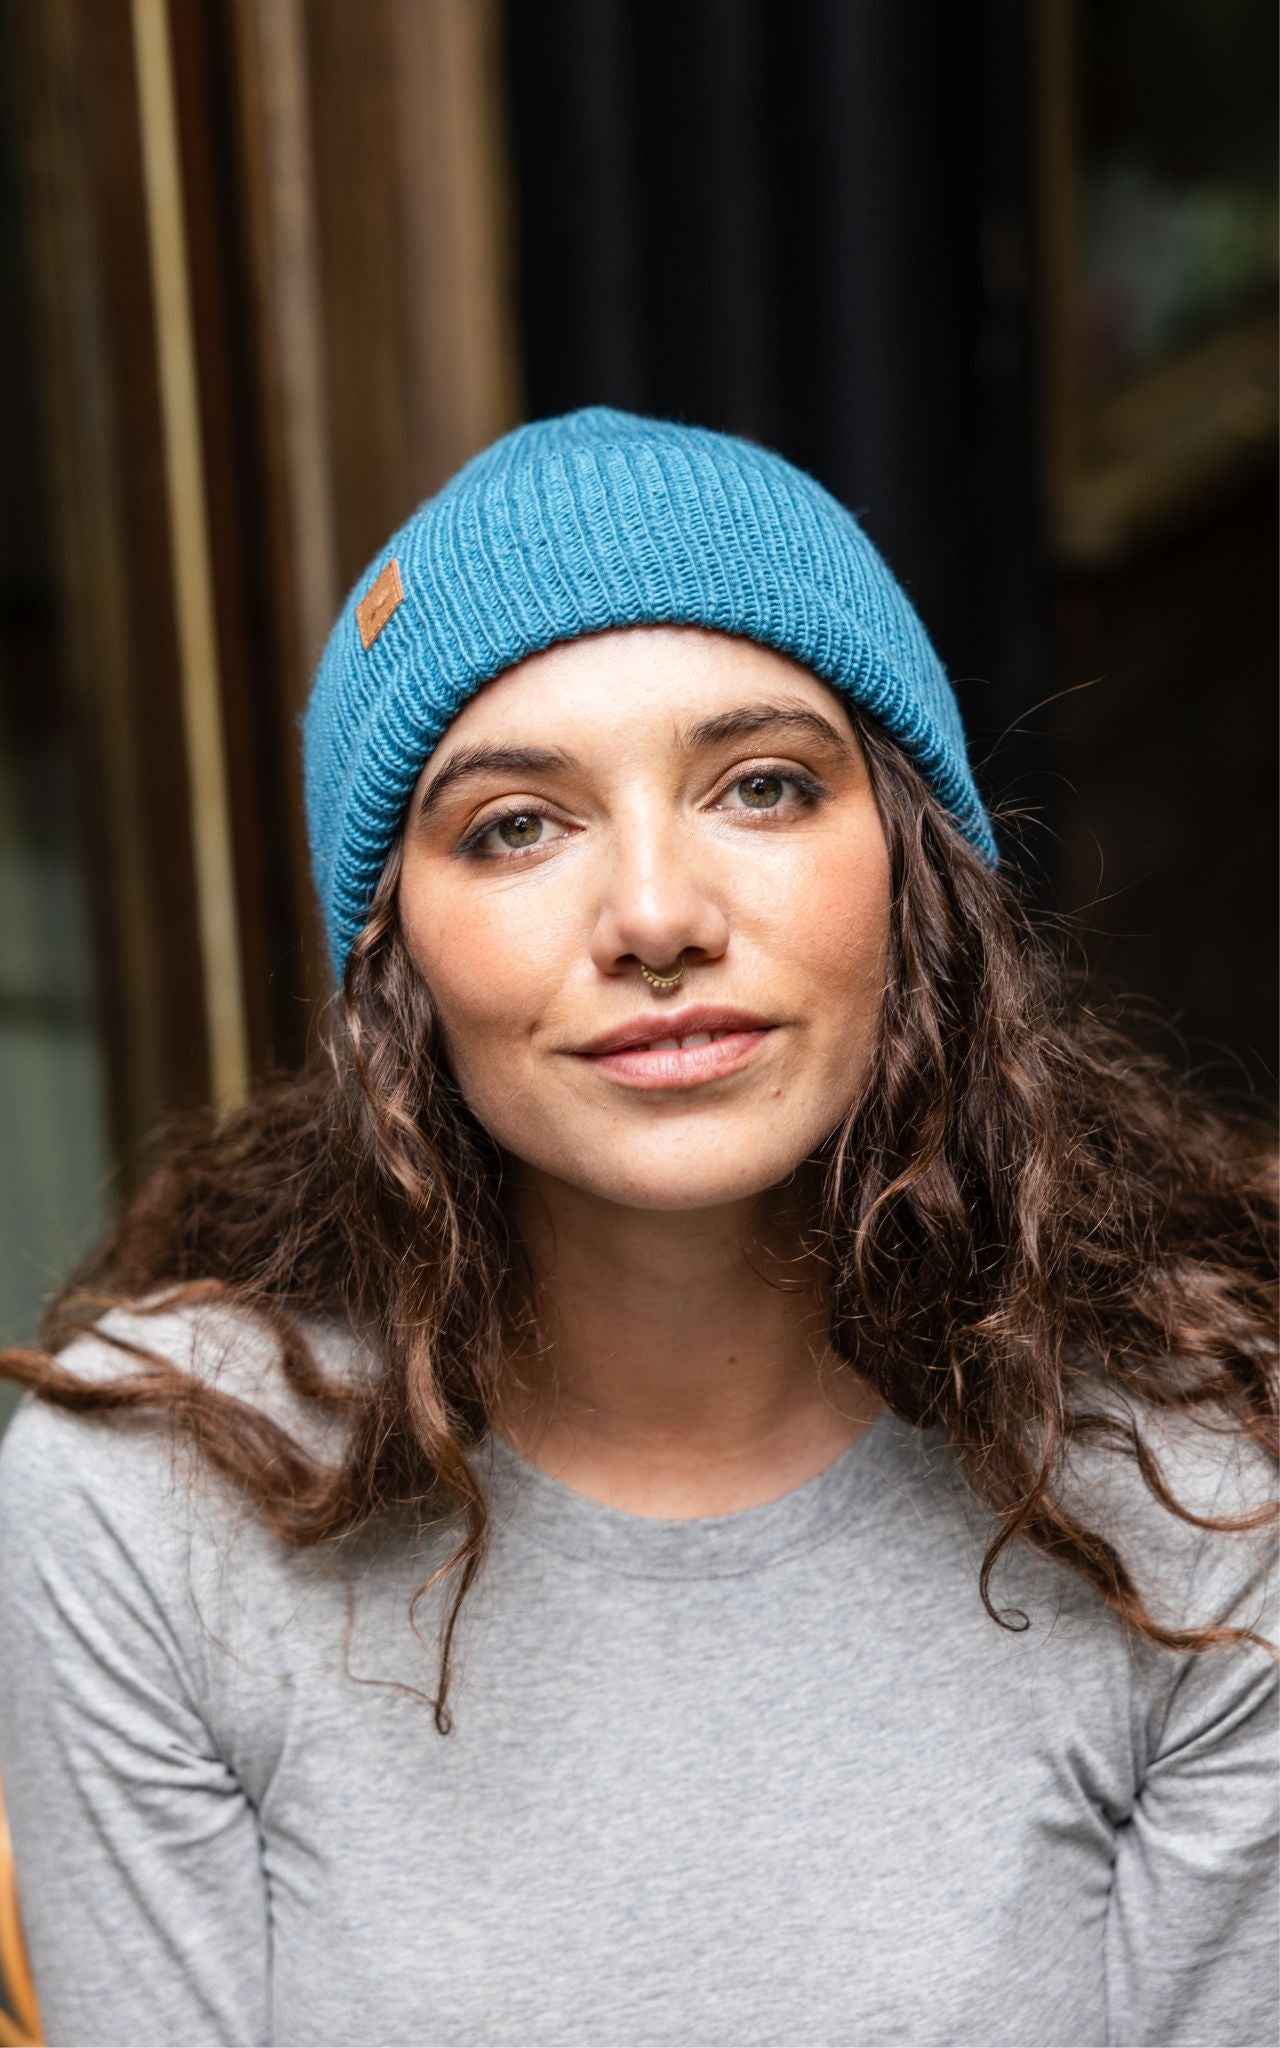 Surya Australia Merino Wool 'Woodstock' Beanie for women made in Nepal - Blue